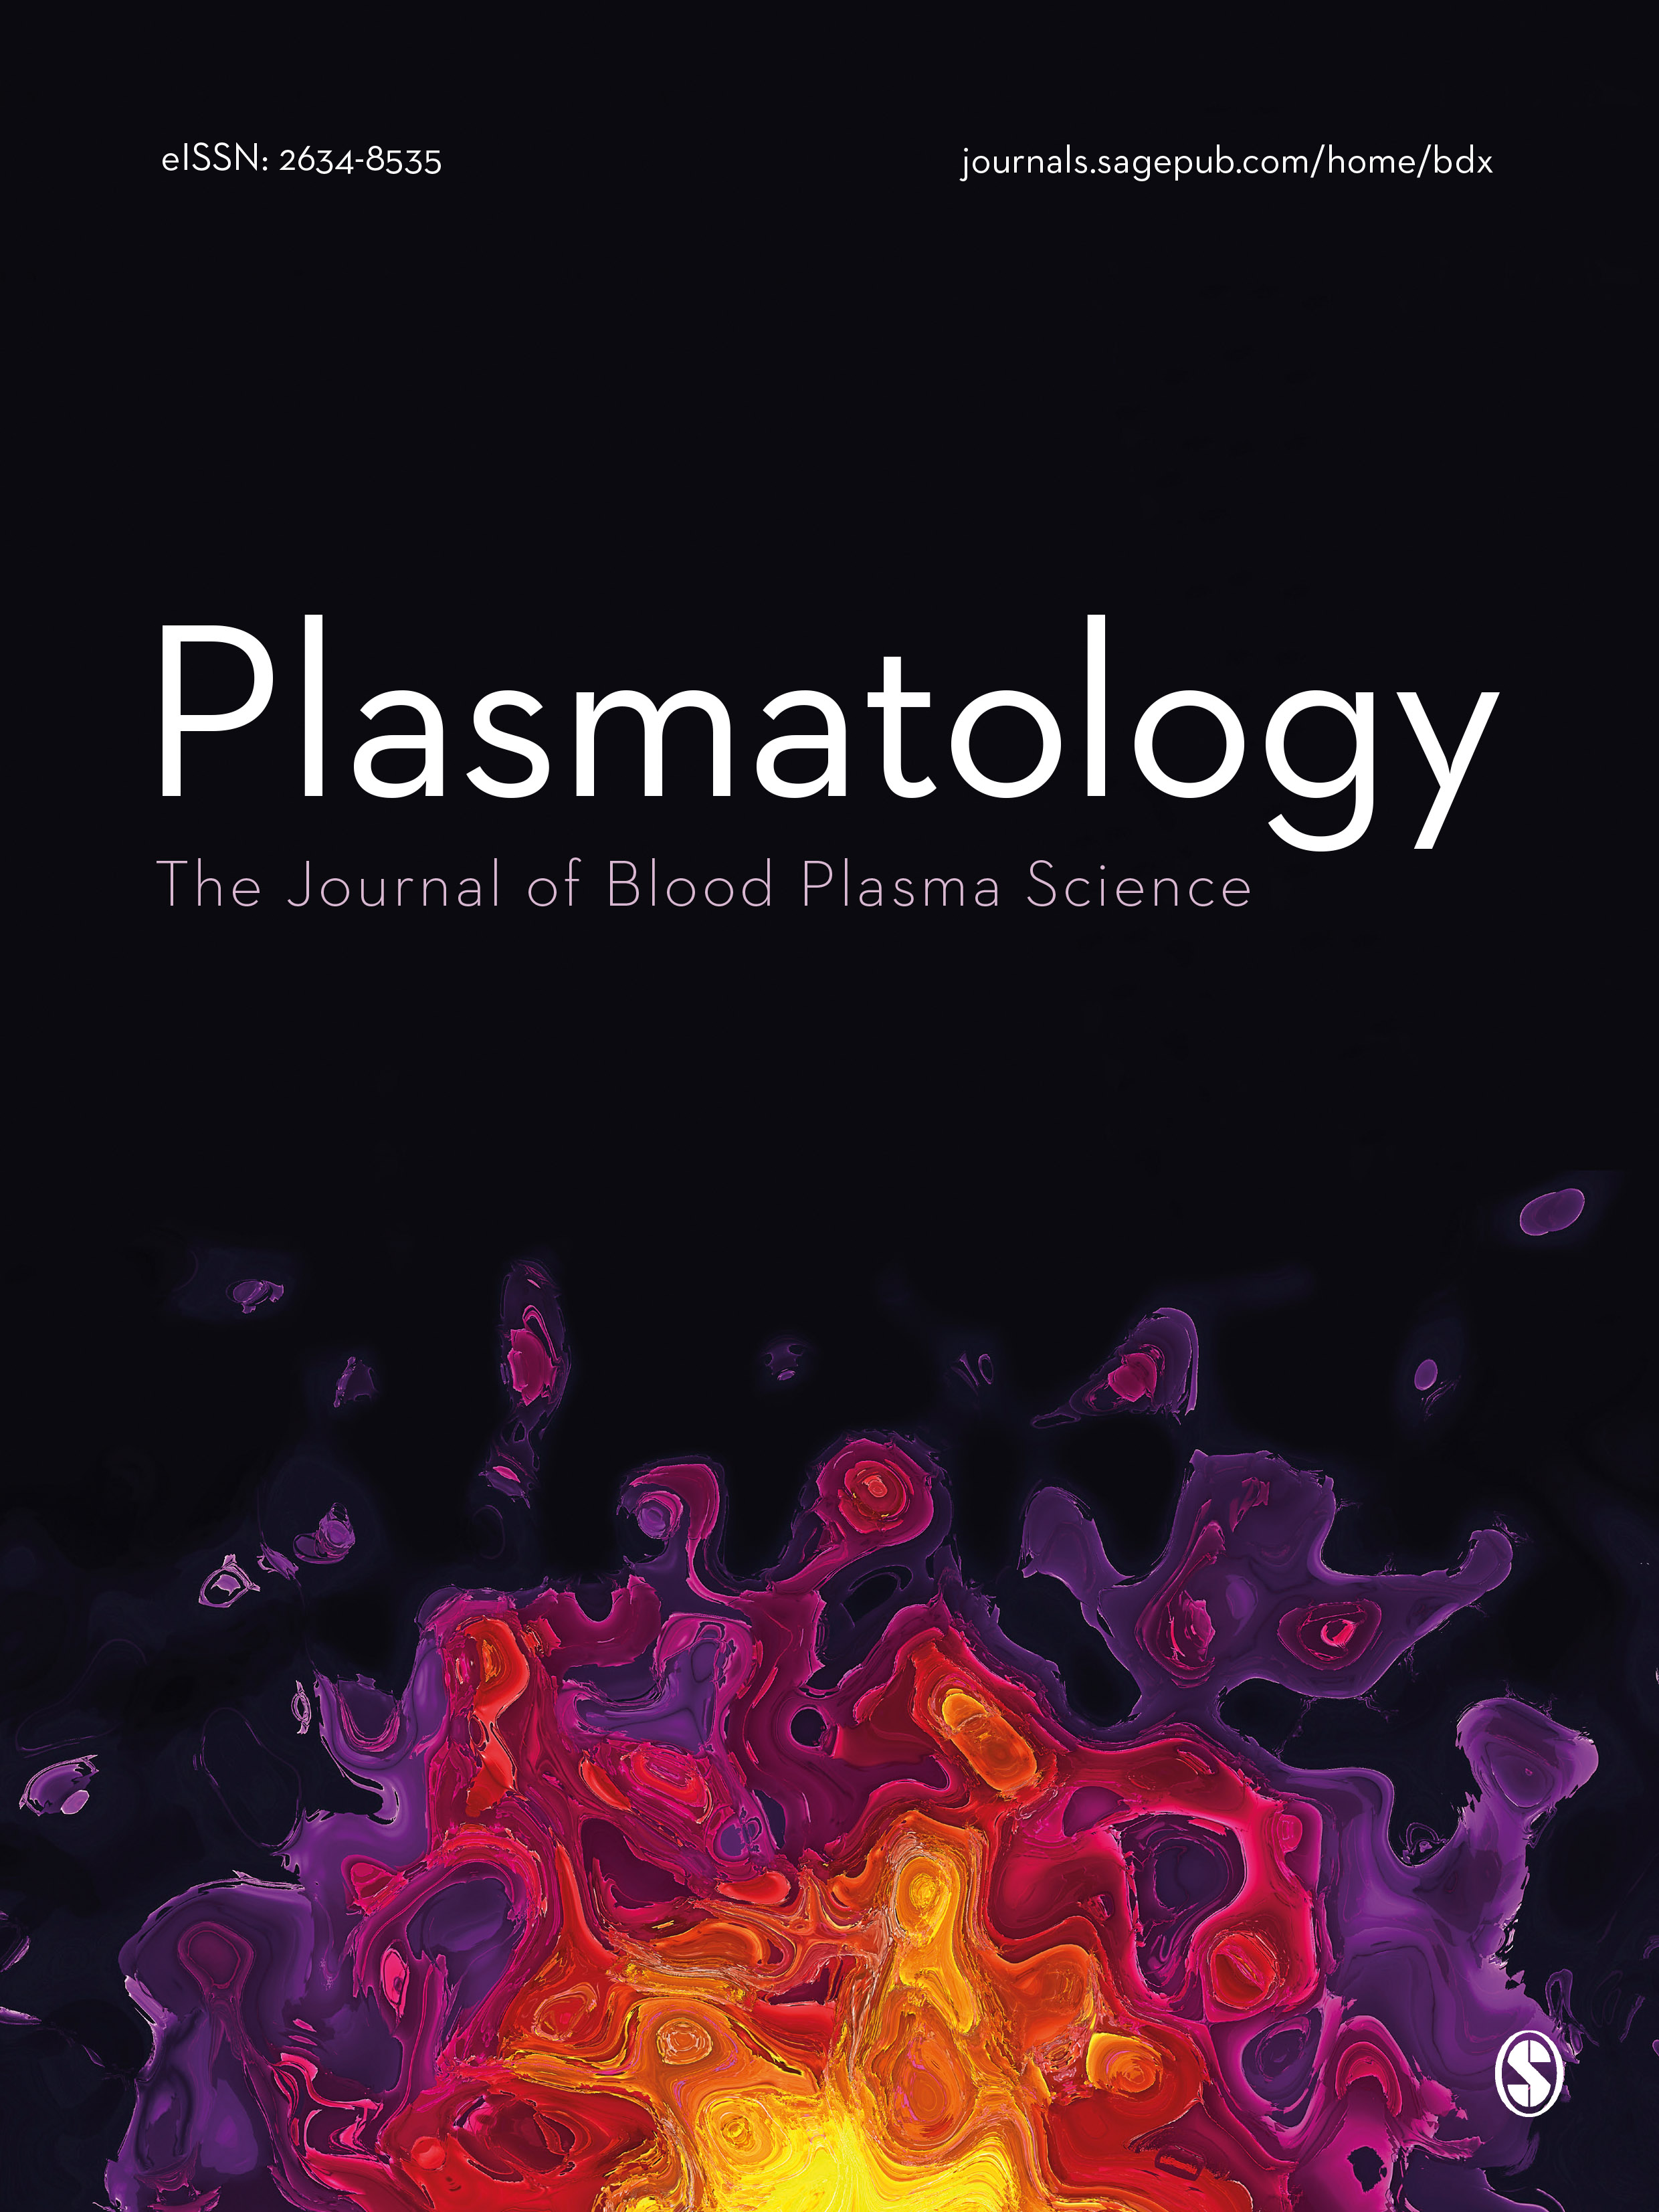 Plasmatology